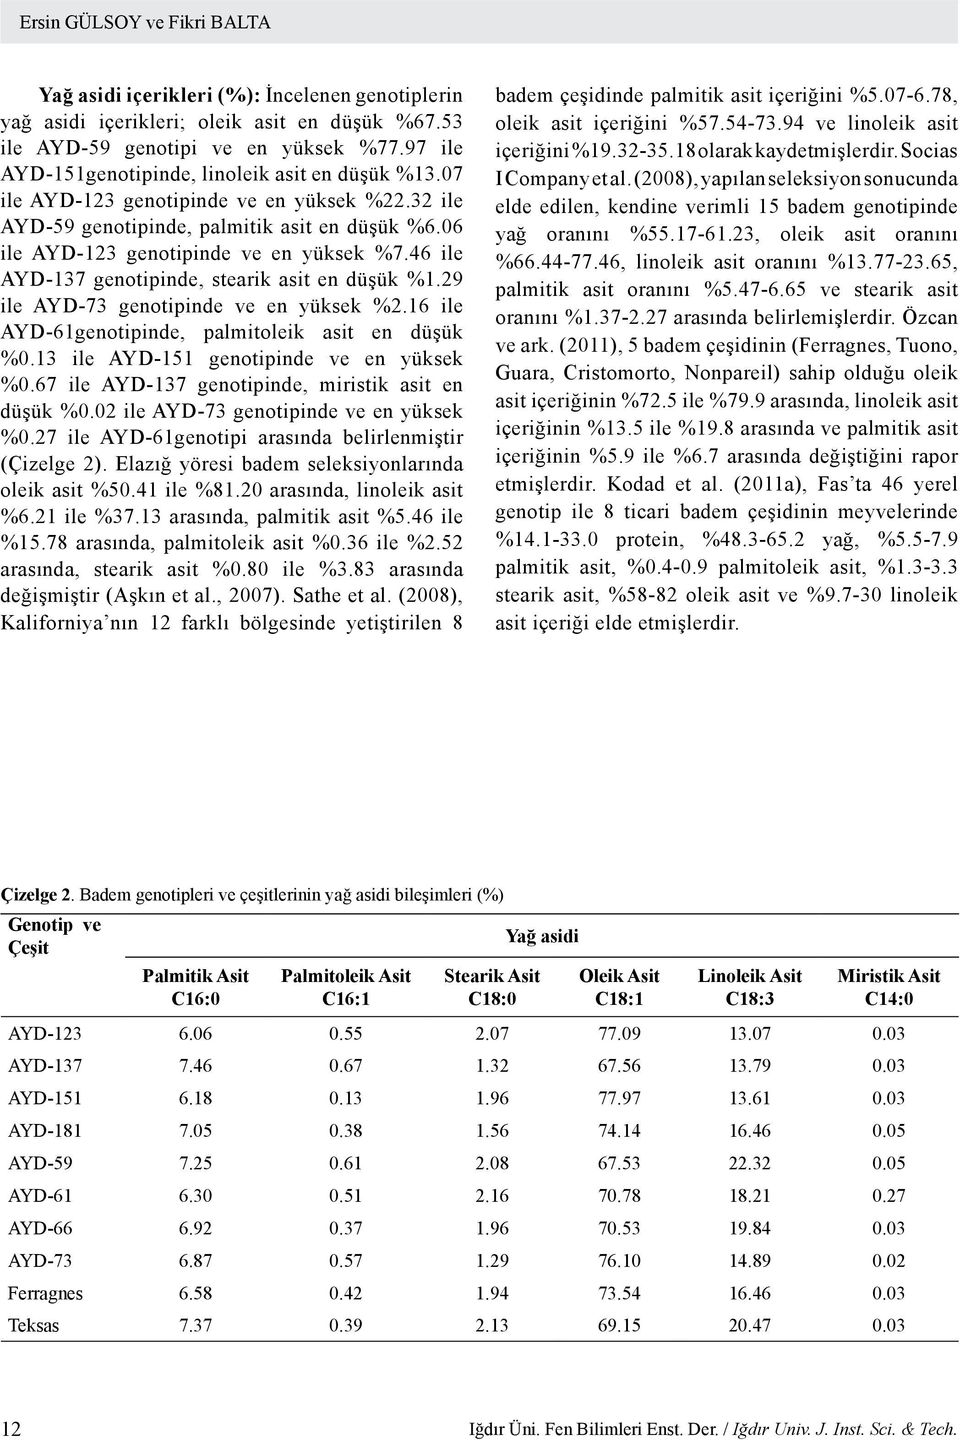 46 ile AYD-137 genotipinde, stearik asit en düşük %1.29 ile AYD-73 genotipinde ve en yüksek %2.16 ile AYD-61genotipinde, palmitoleik asit en düşük %0.13 ile AYD-151 genotipinde ve en yüksek %0.